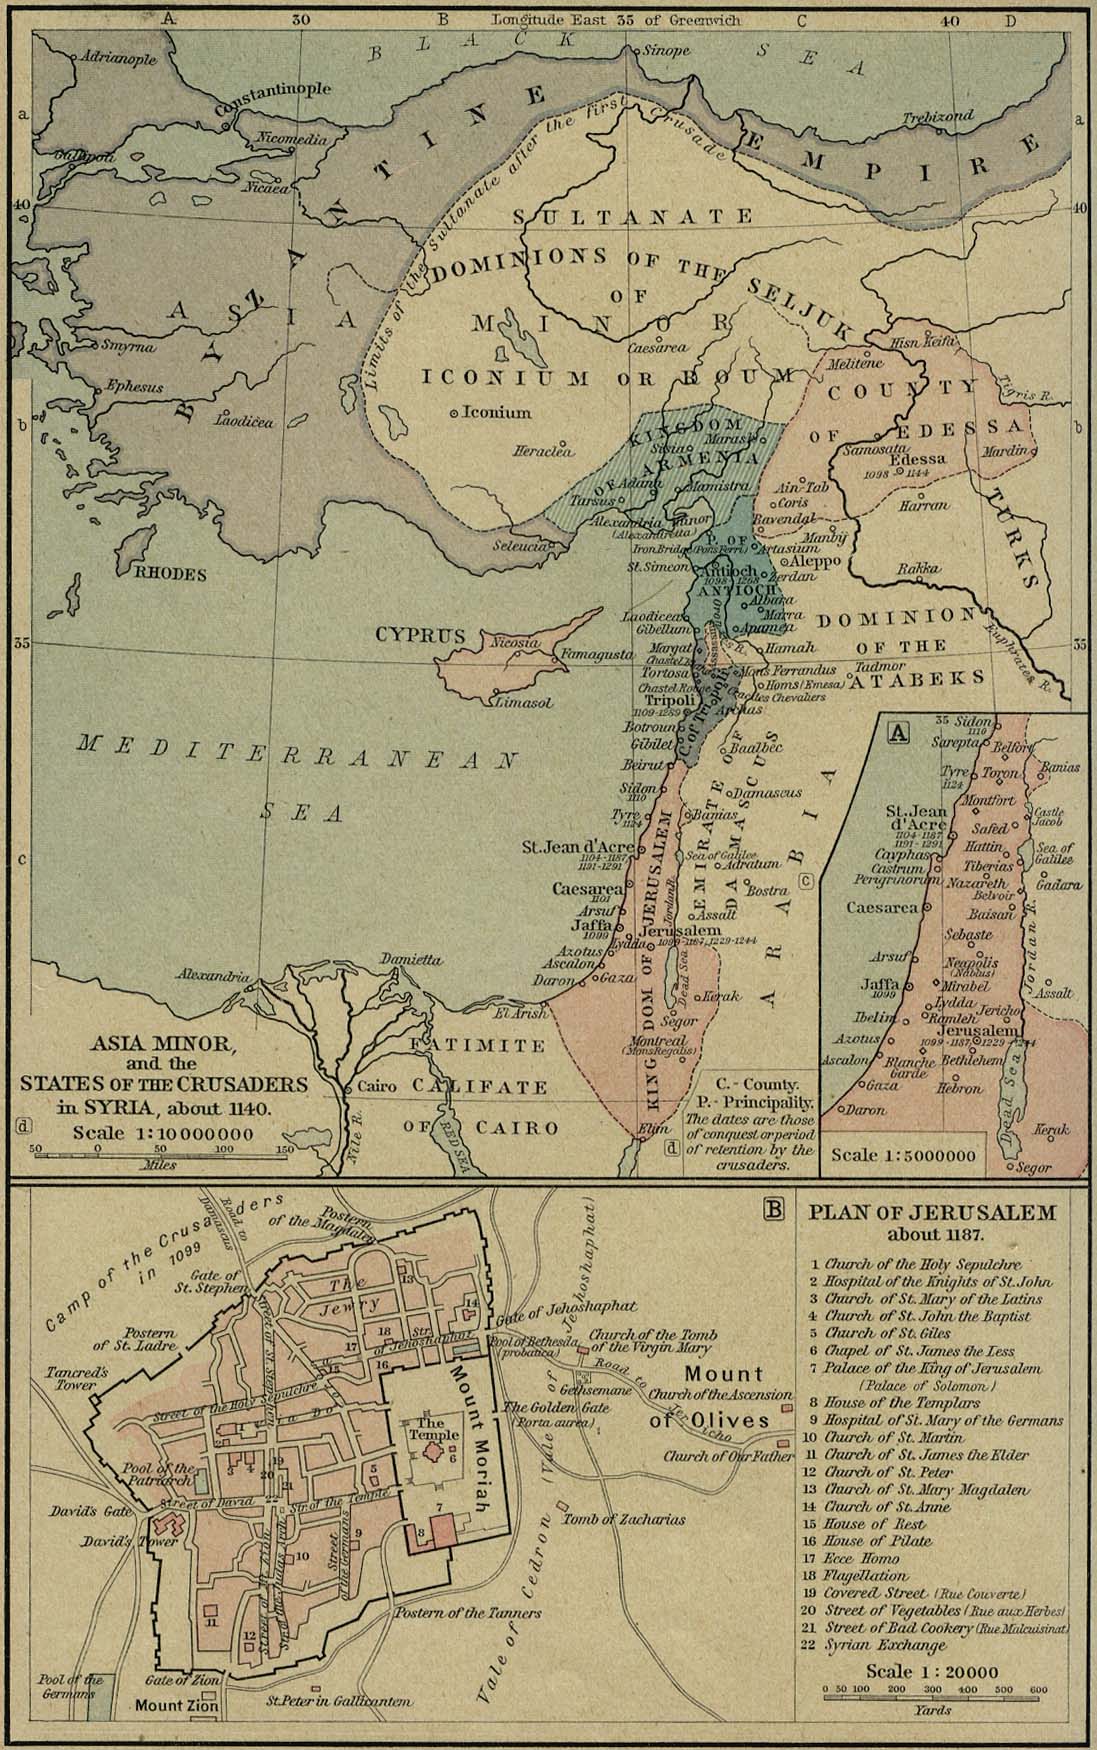 Asia Menor y los estados de los cruzados en Siria, circa 1140